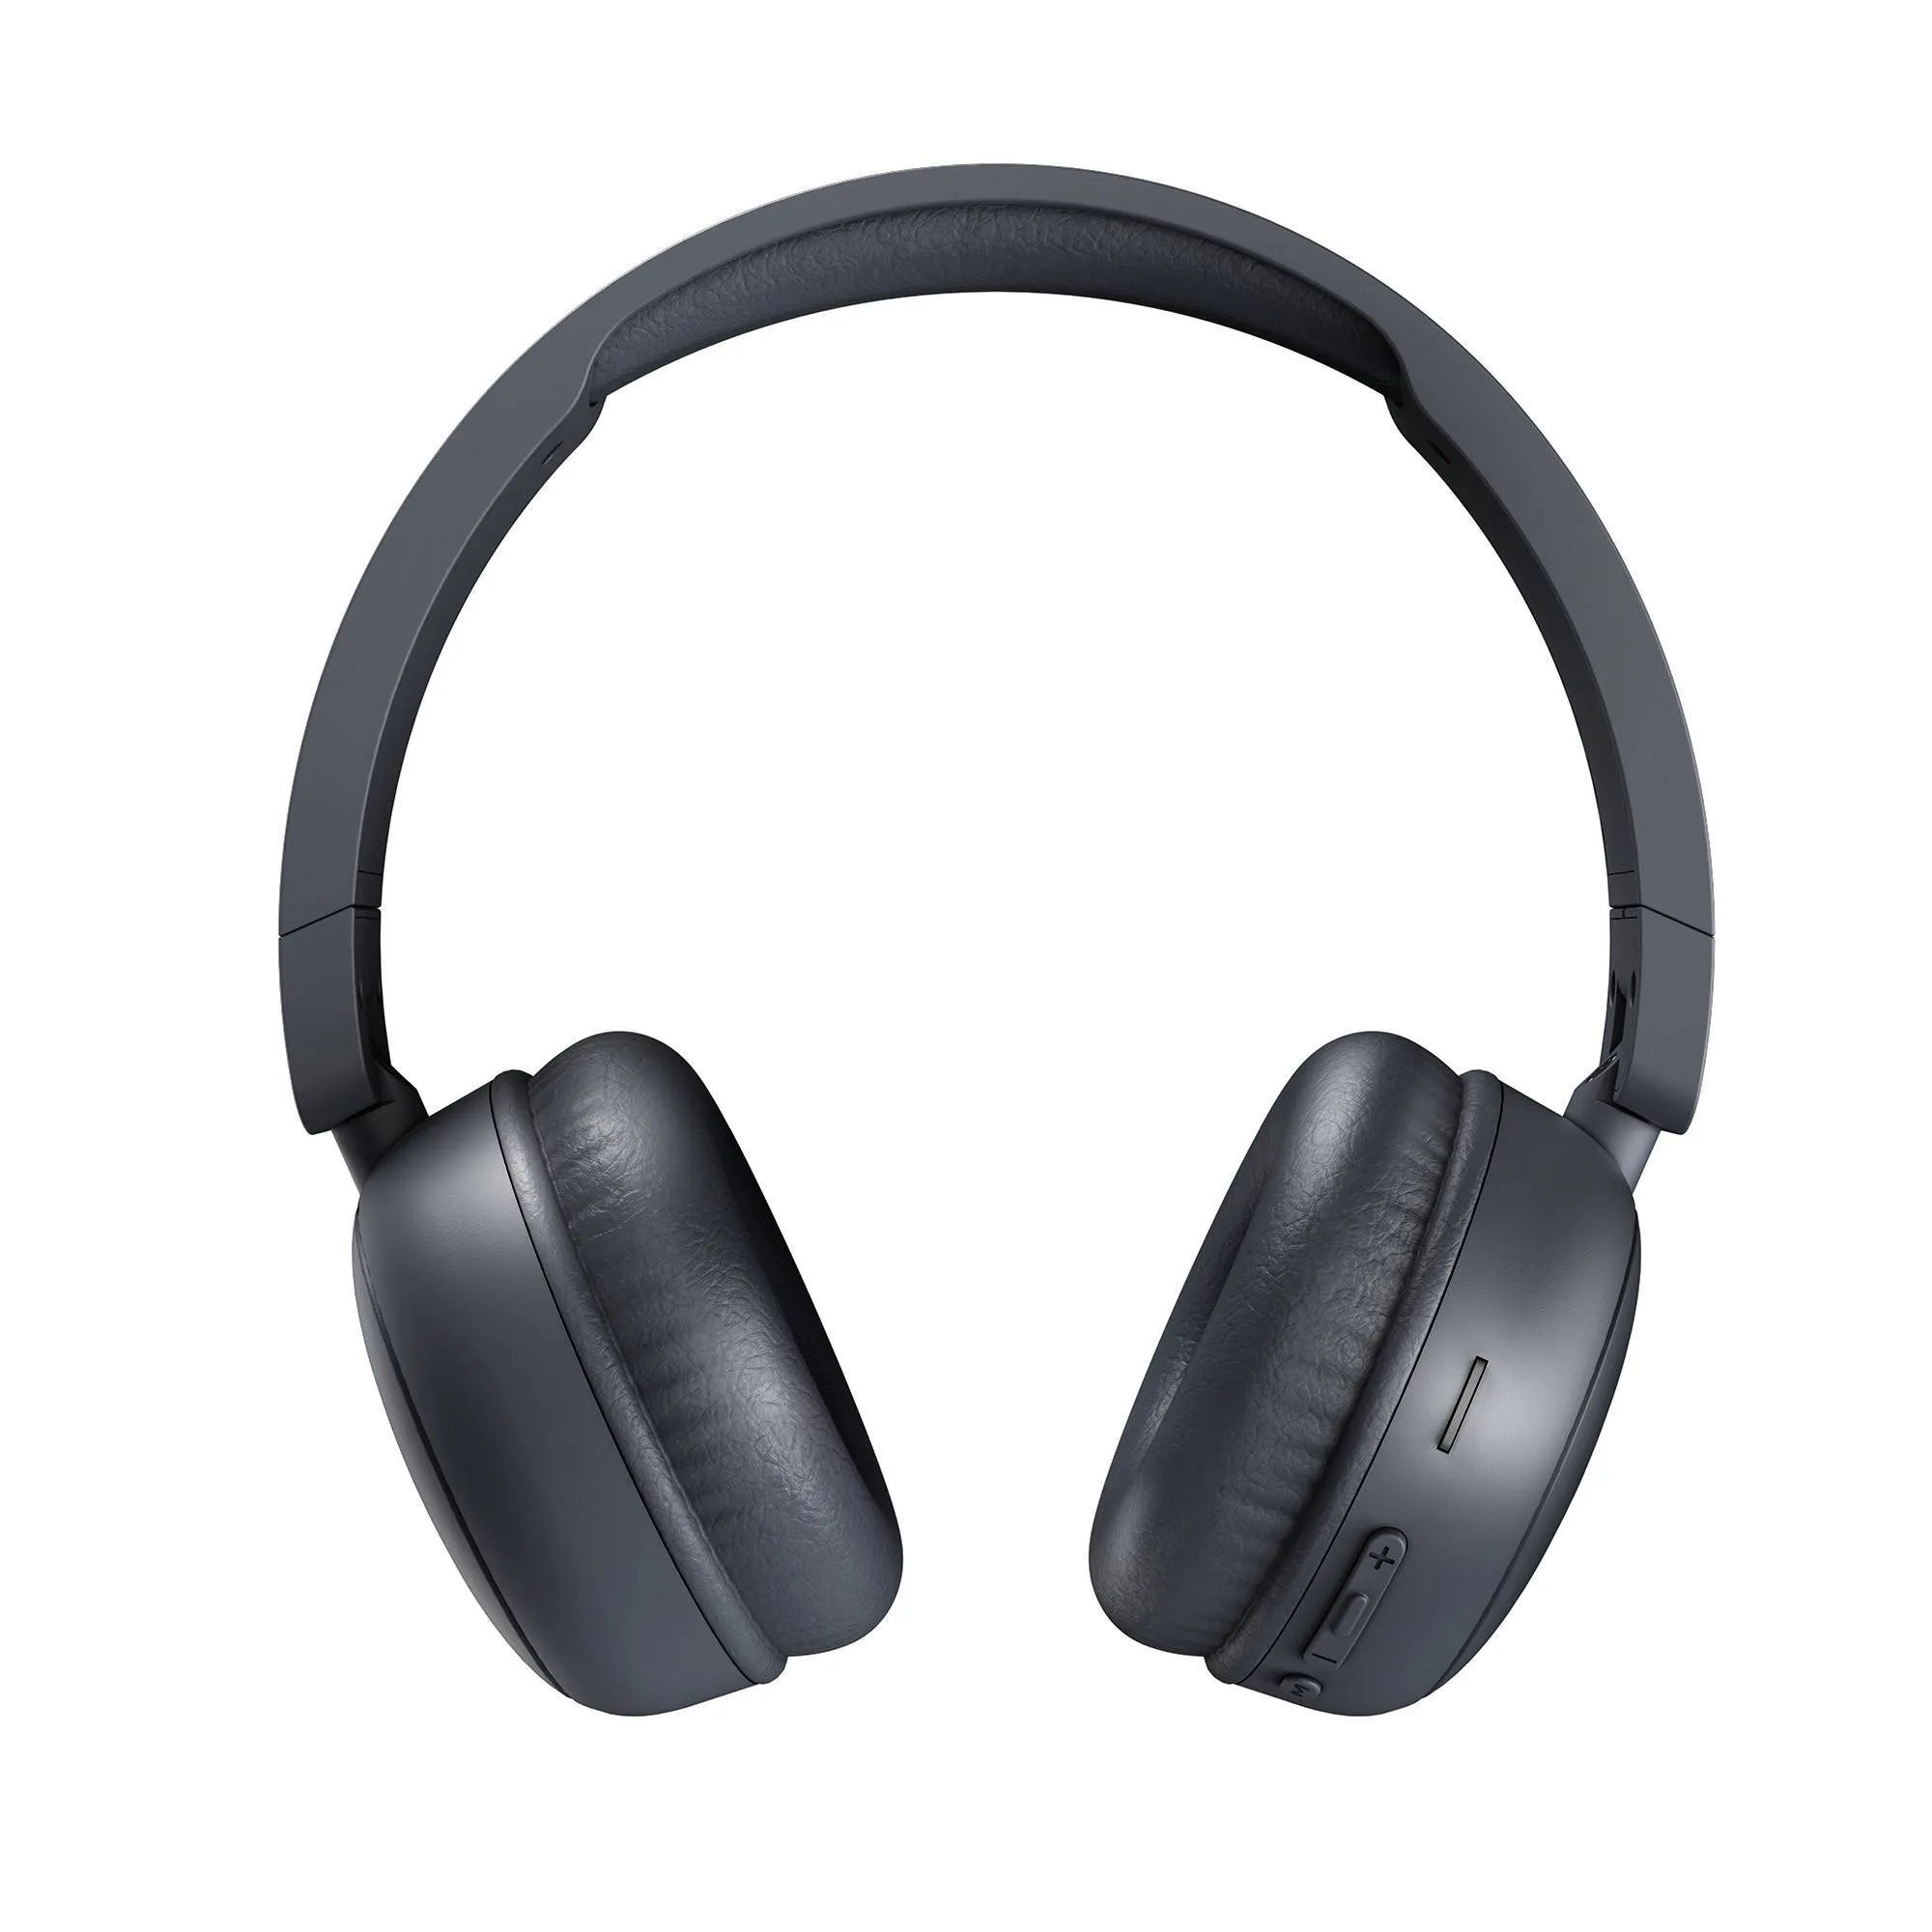 Sony presenta dos nuevos auriculares con reproductor de Mp3